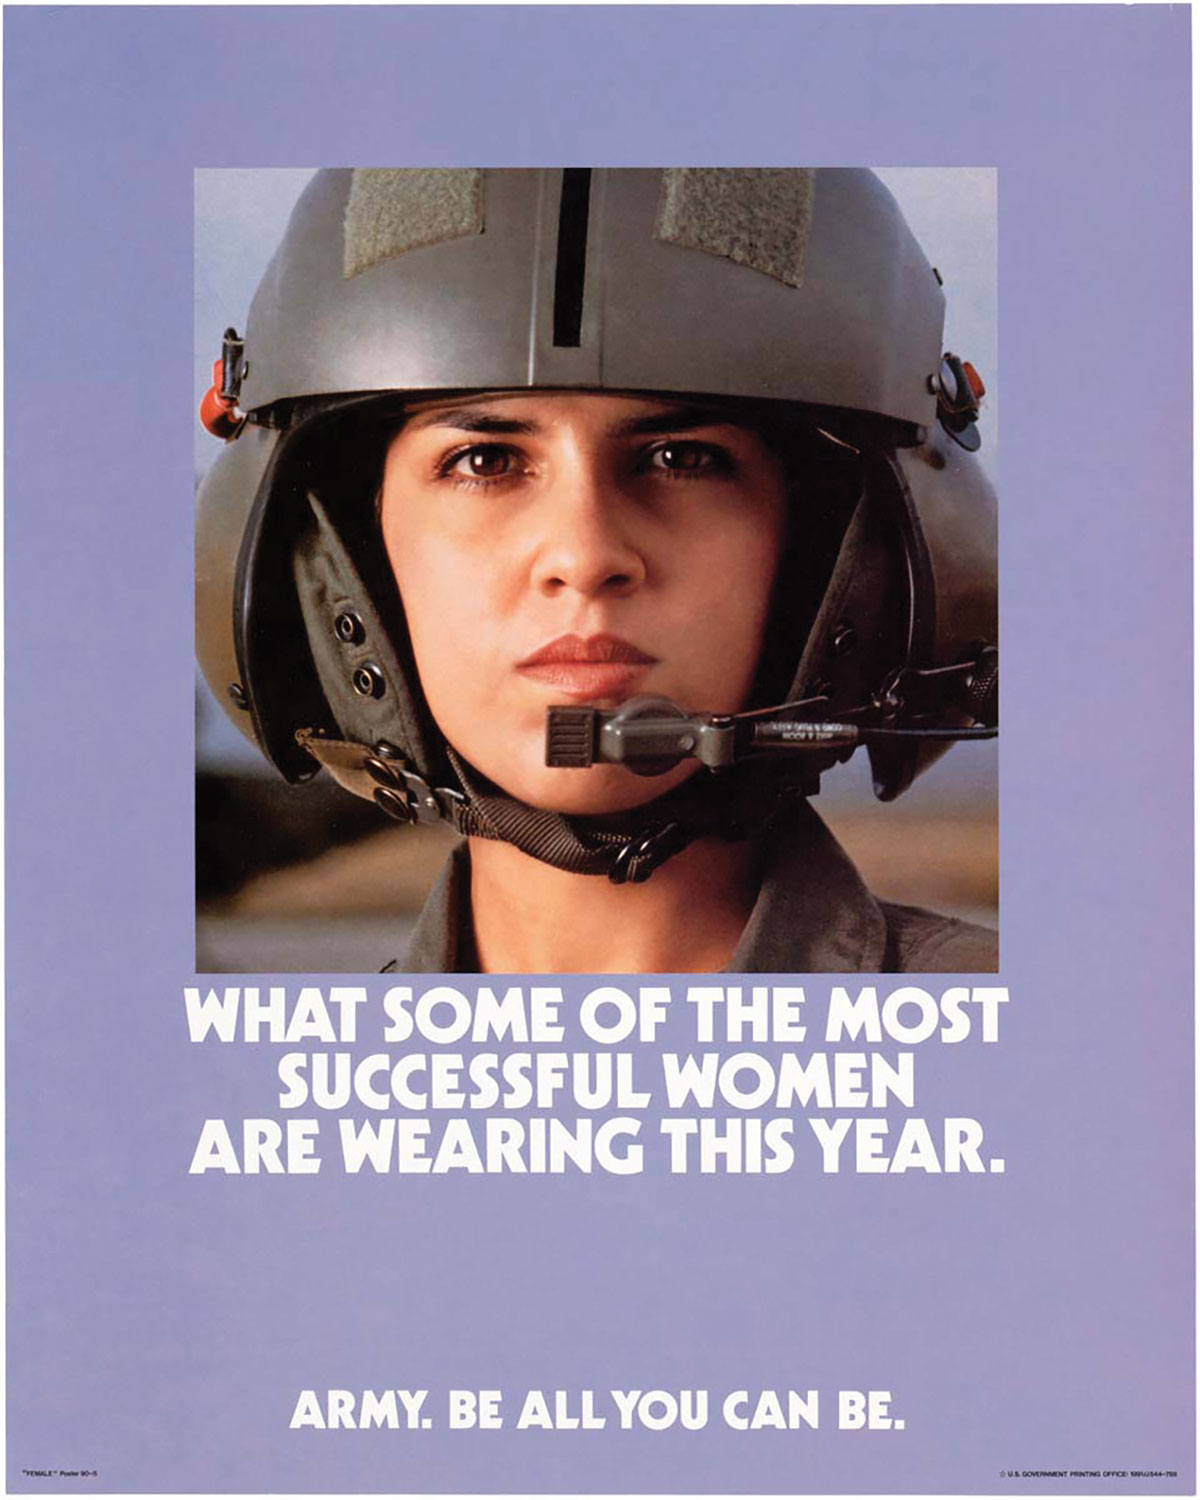 Army recruiting poster circa 1990